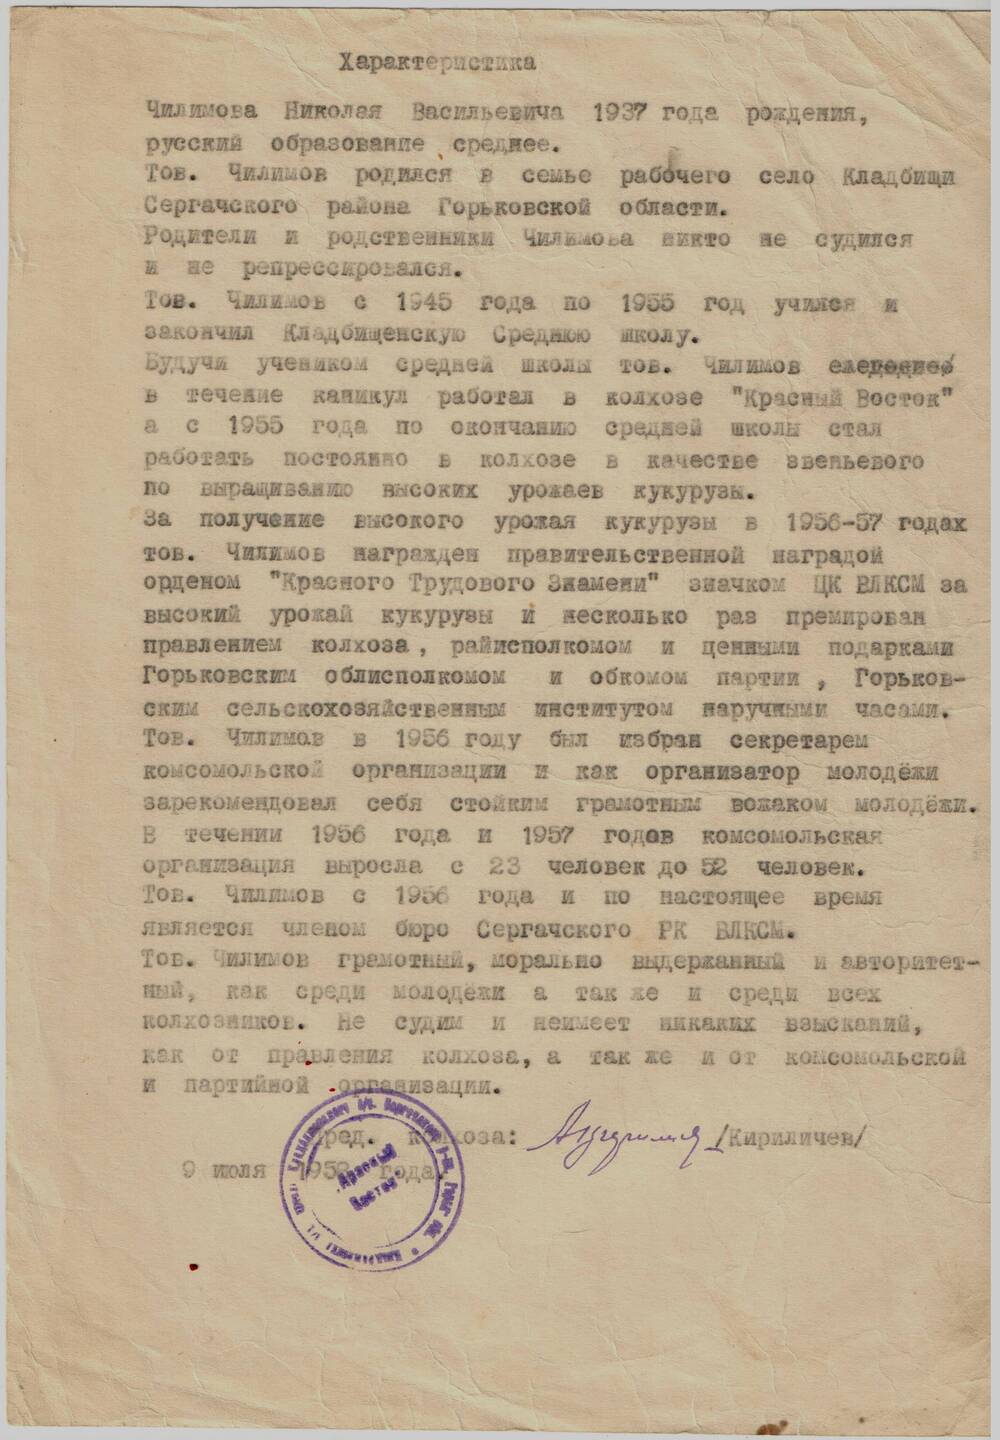 Автобиография Чилимова Н.В., звеньевого кукурузоводов . 14.06.1957 г